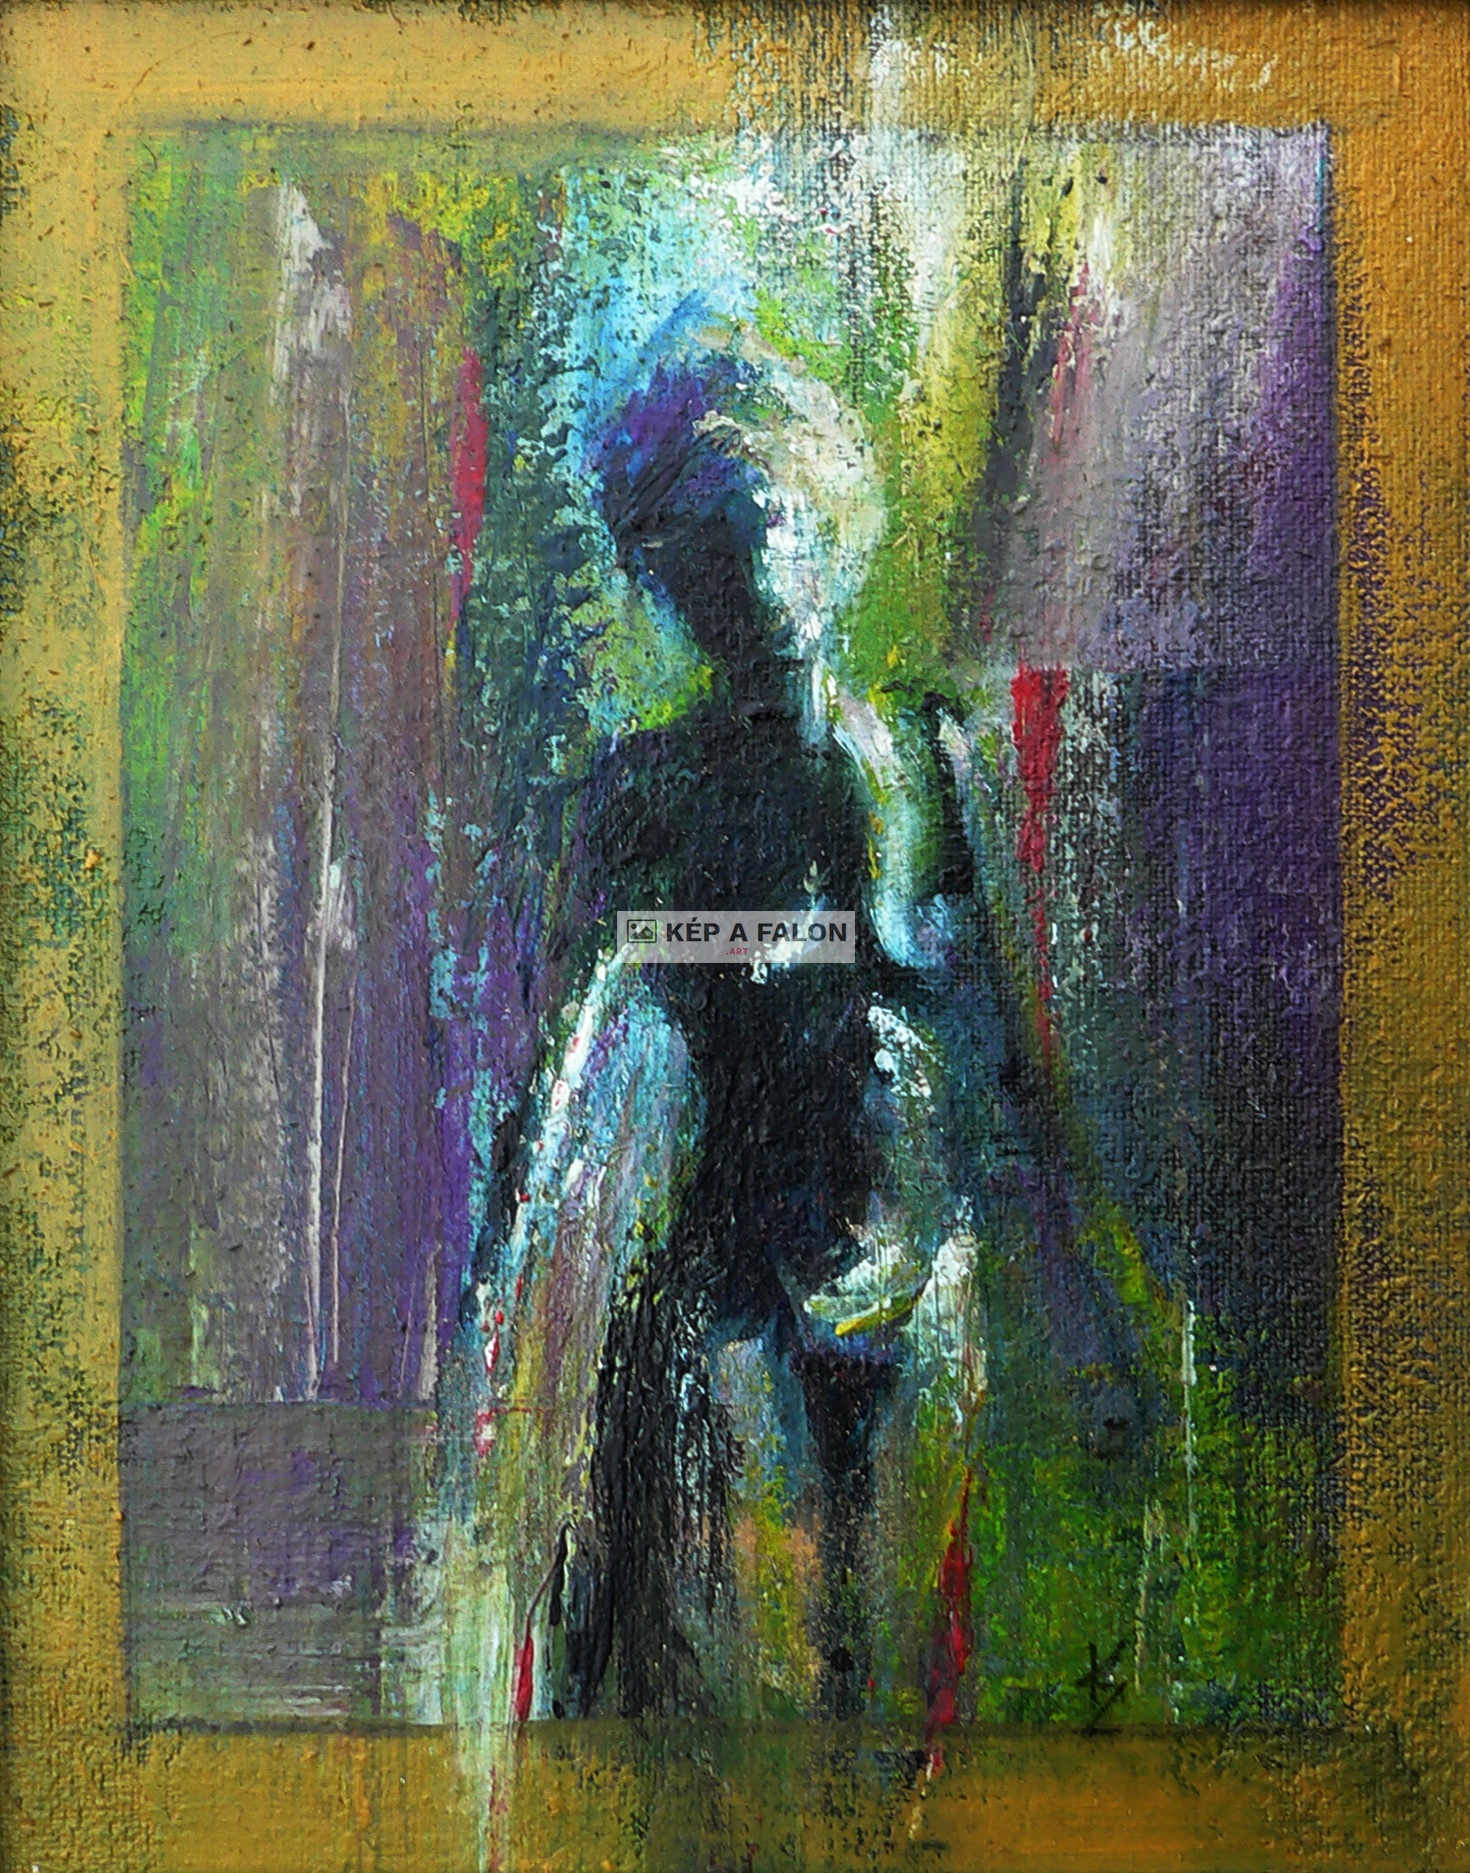 Sappír by: Zoltán Kőhalmi | MCMXCVIII, olaj festmény